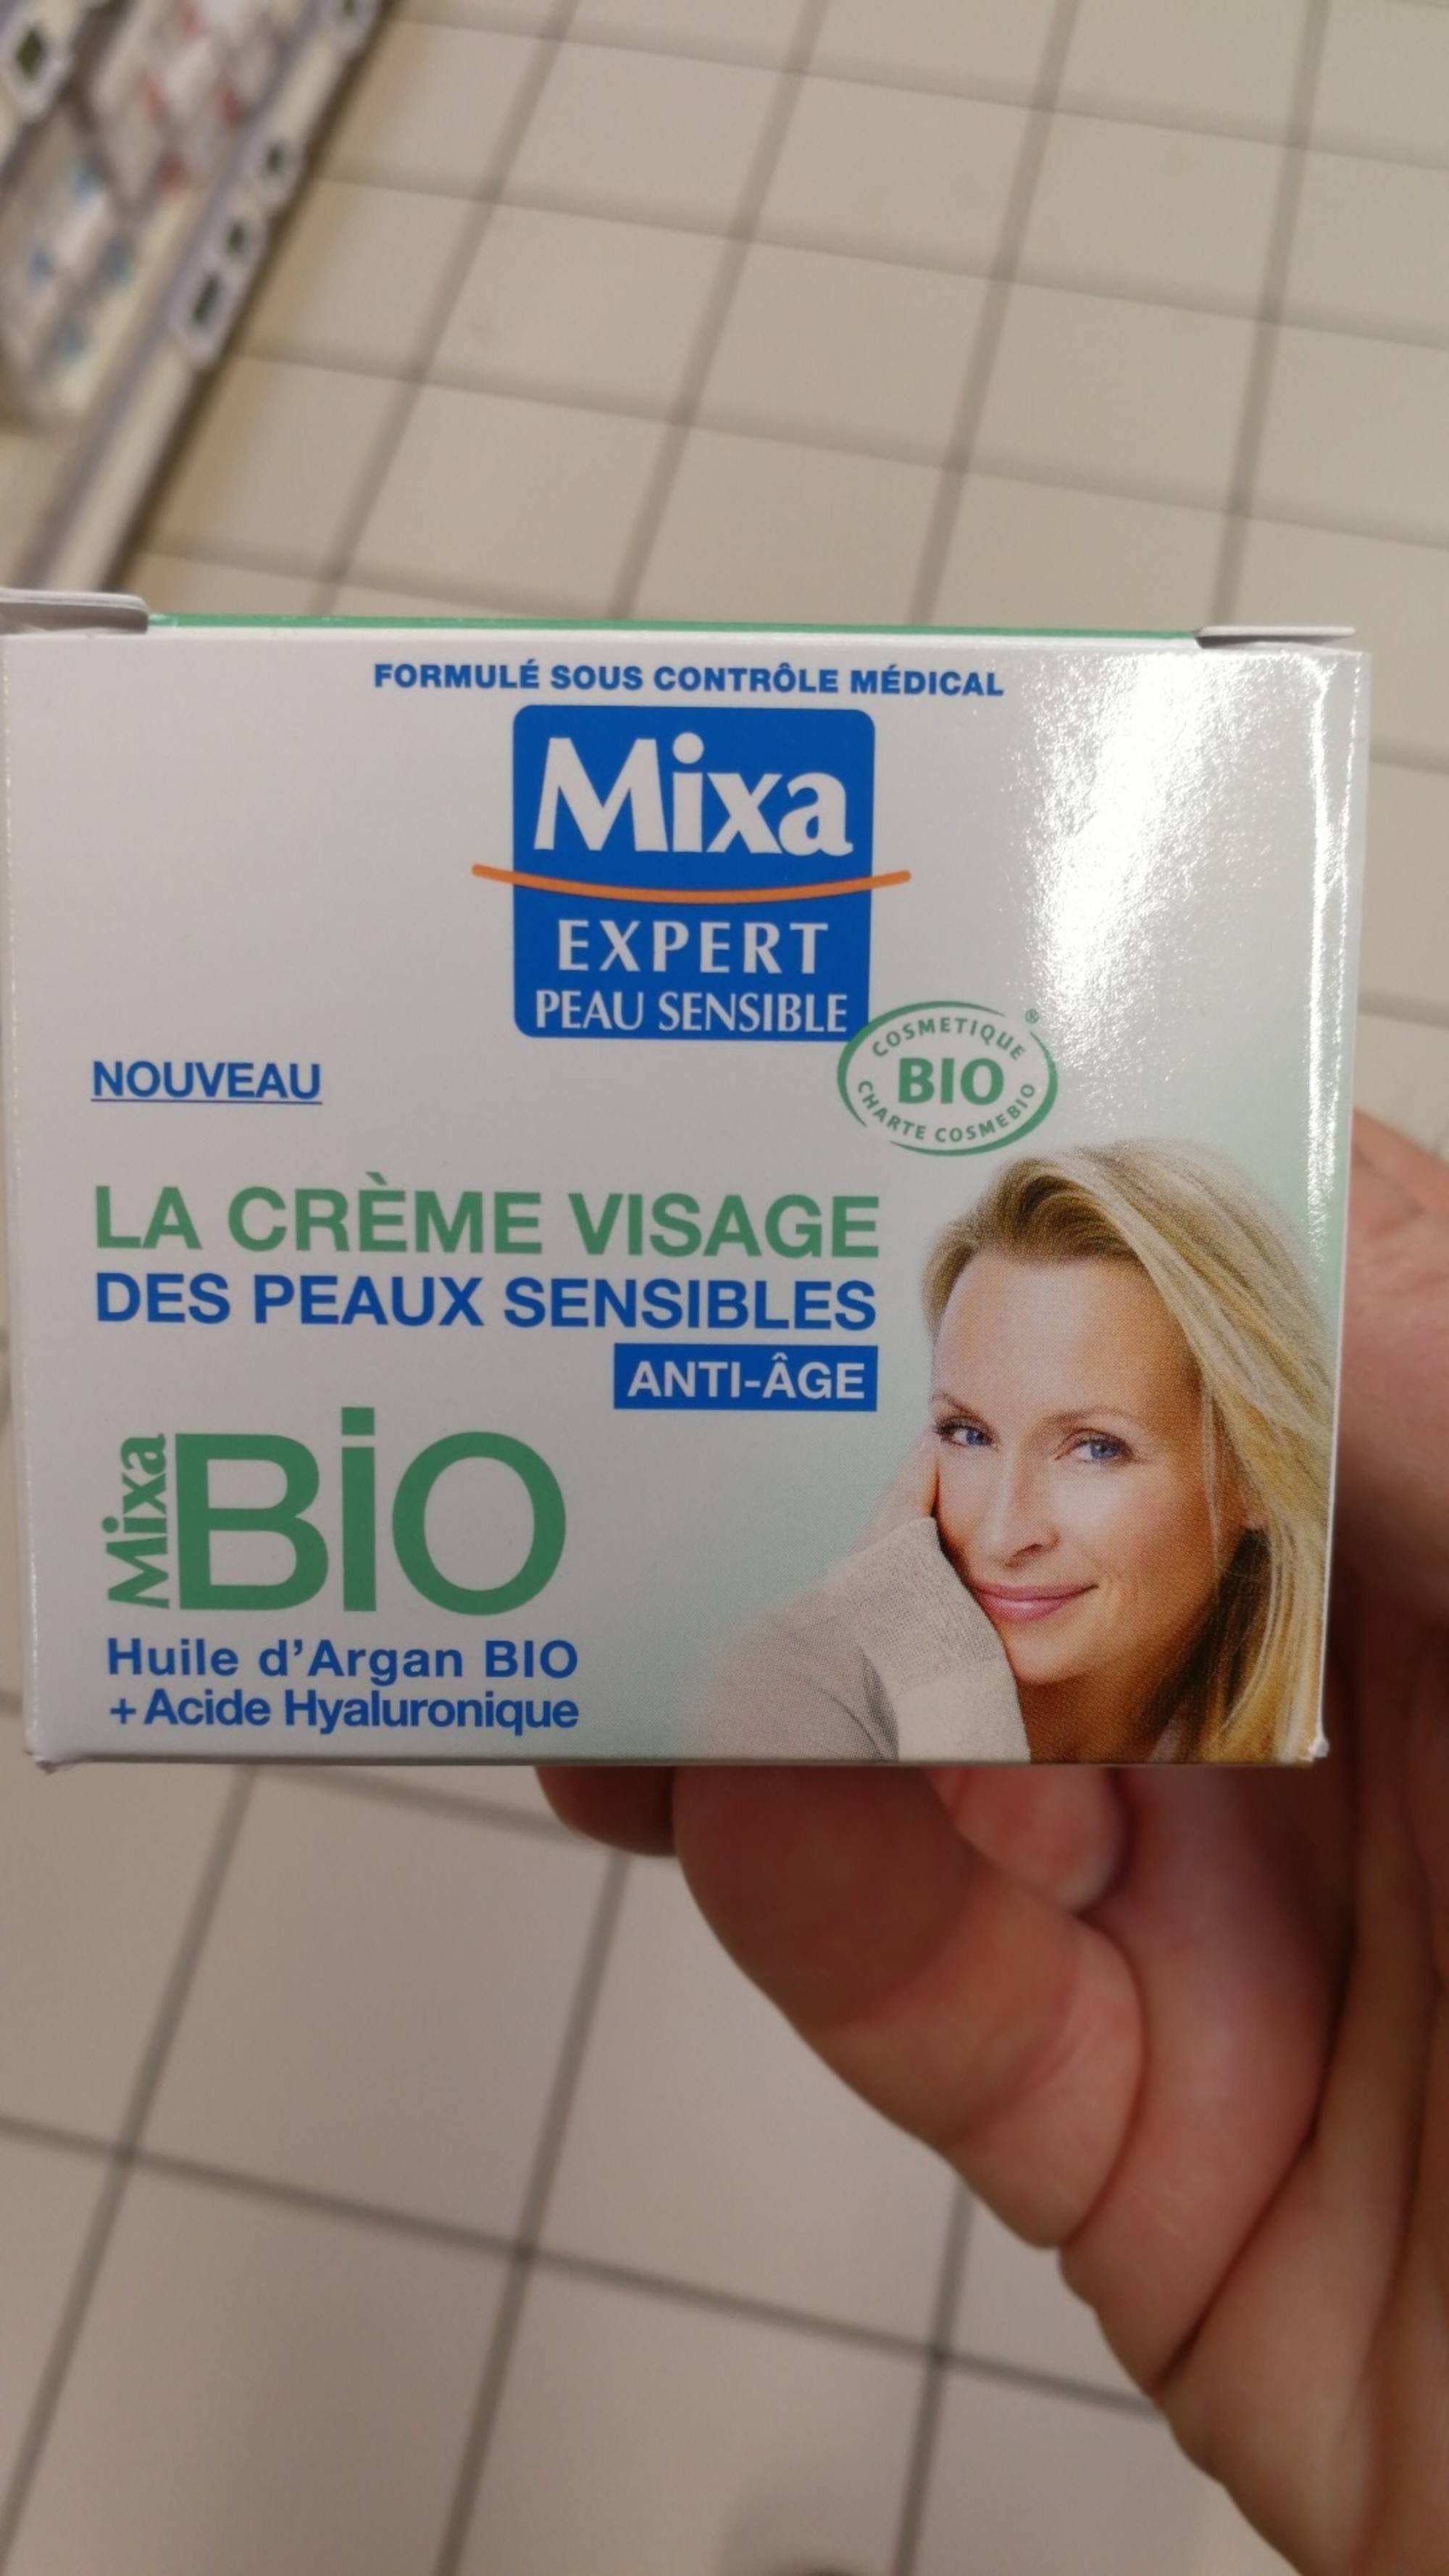 MIXA - Expert peau sensible - La crème visage bio